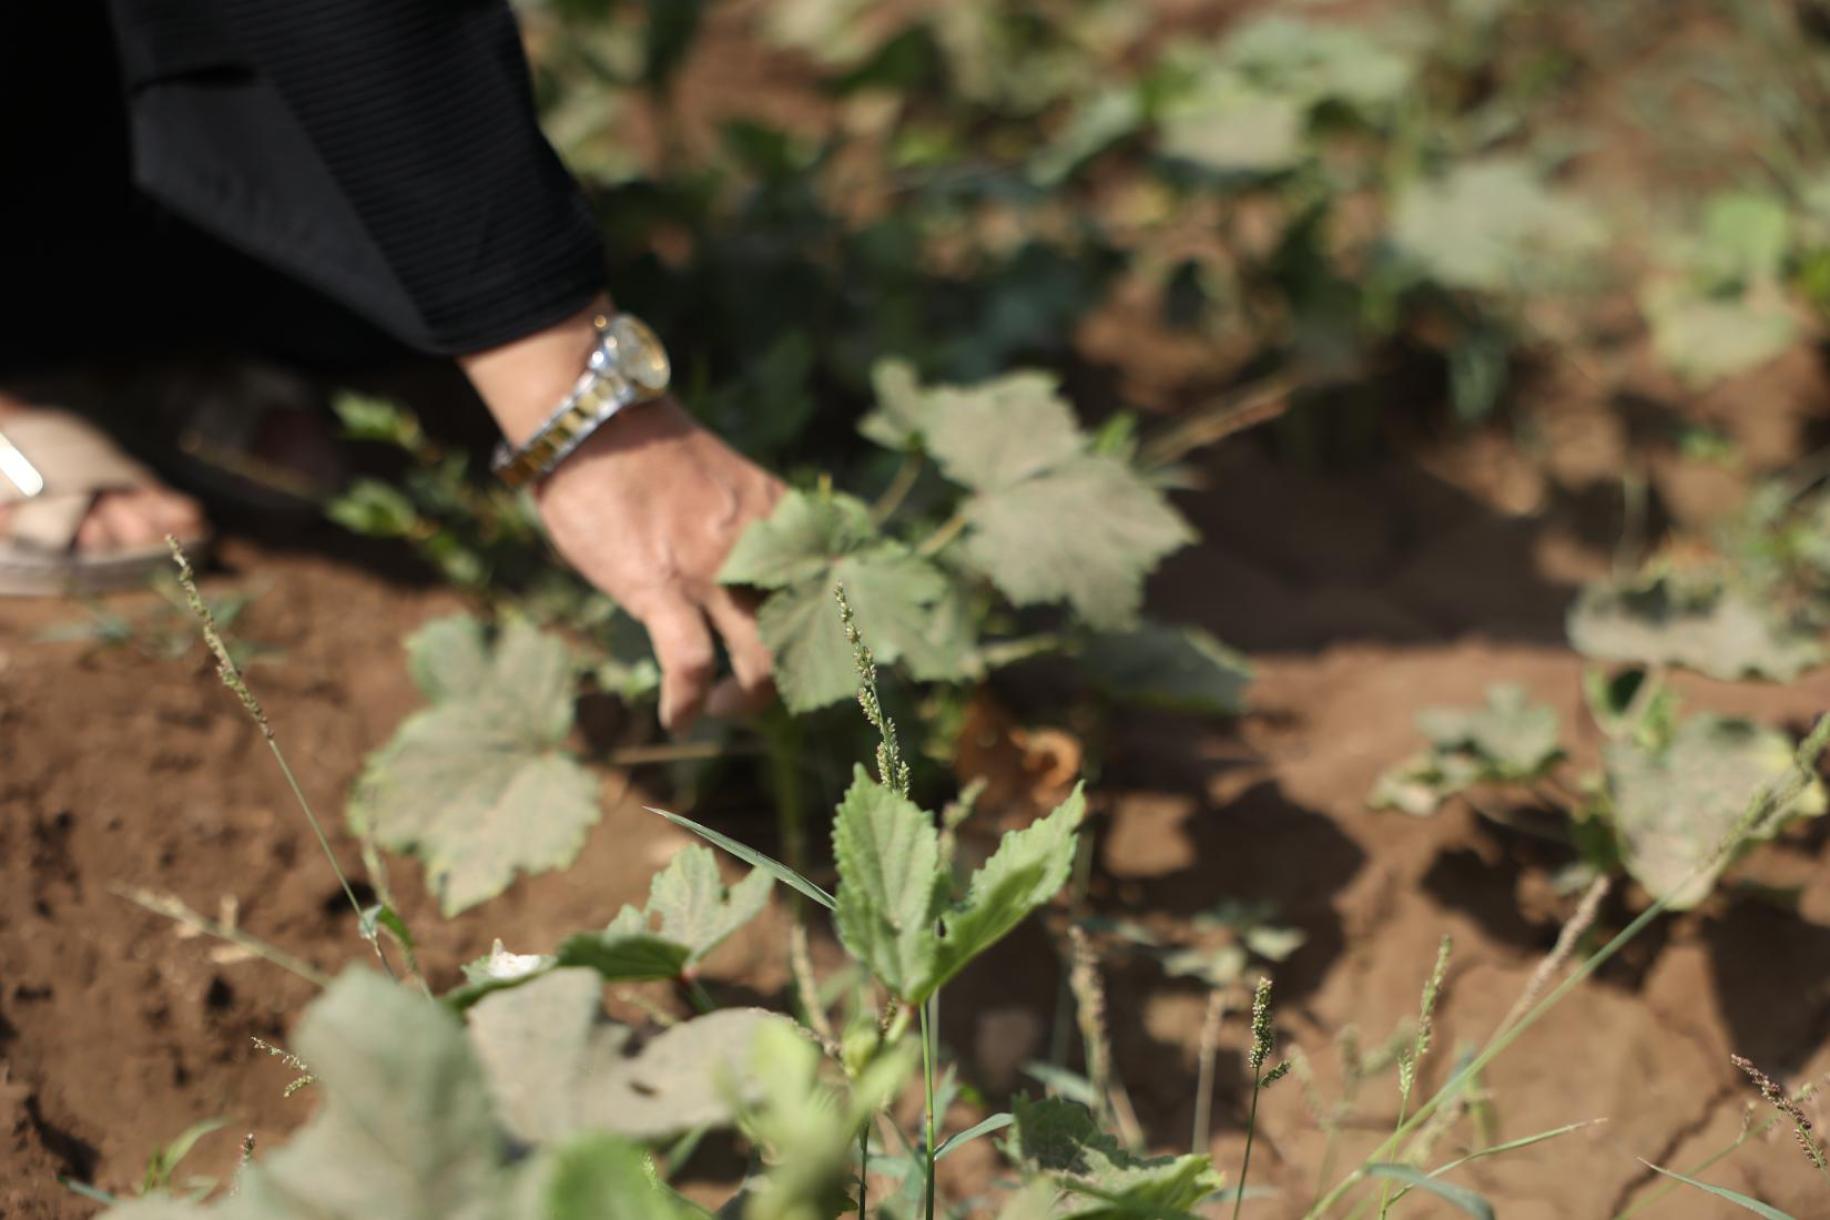 لقطة مقرّبة ليد امرأة تعتني بمحاصيلها.